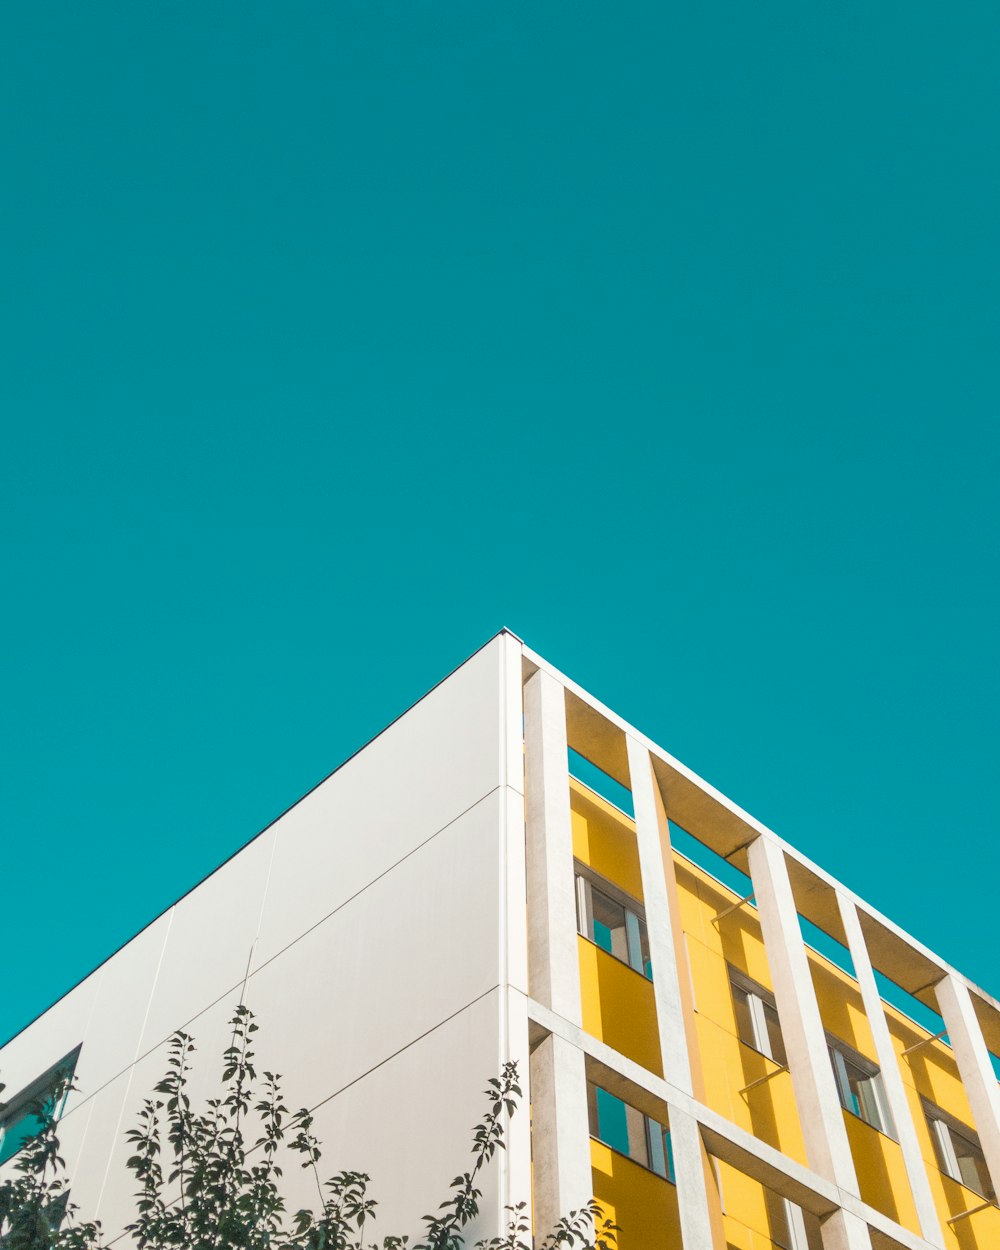 Photographie en contre-plongée d’un bâtiment en béton blanc et jaune